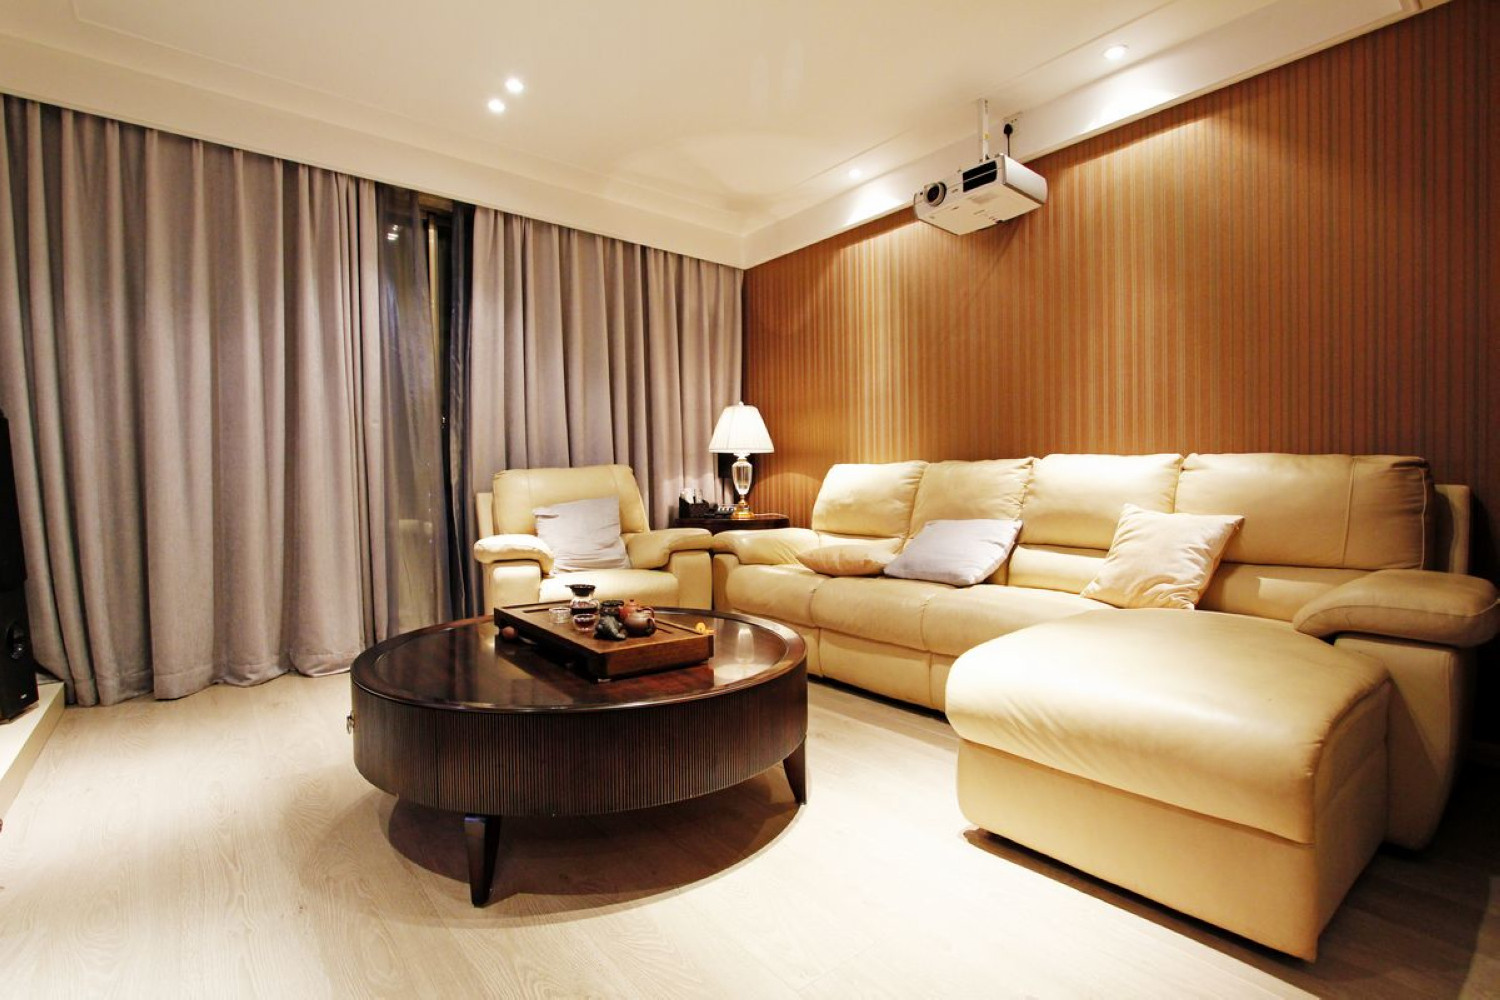 二居室装修,110平米装修,10-15万装修,客厅,现代简约风格,沙发背景墙,咖啡色